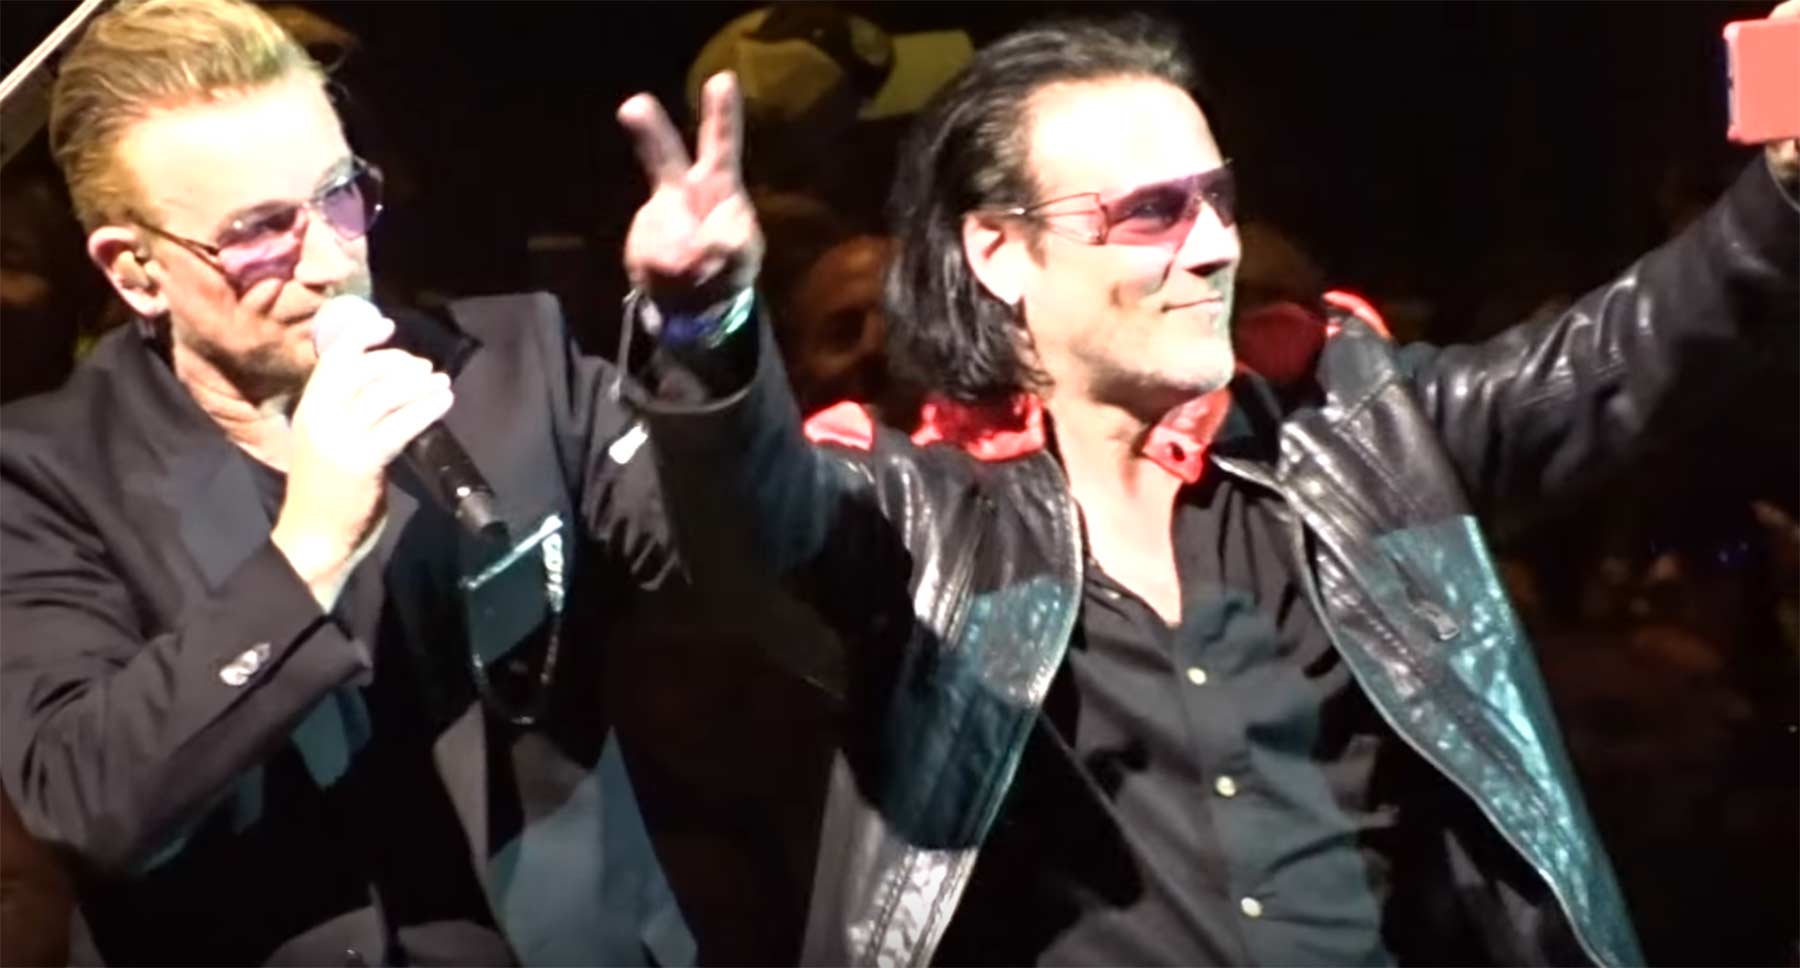 Bono lässt Sänger einer U2-Coverband "Sweetest Thing" mitsingen u2-coverband-singer-on-stage 